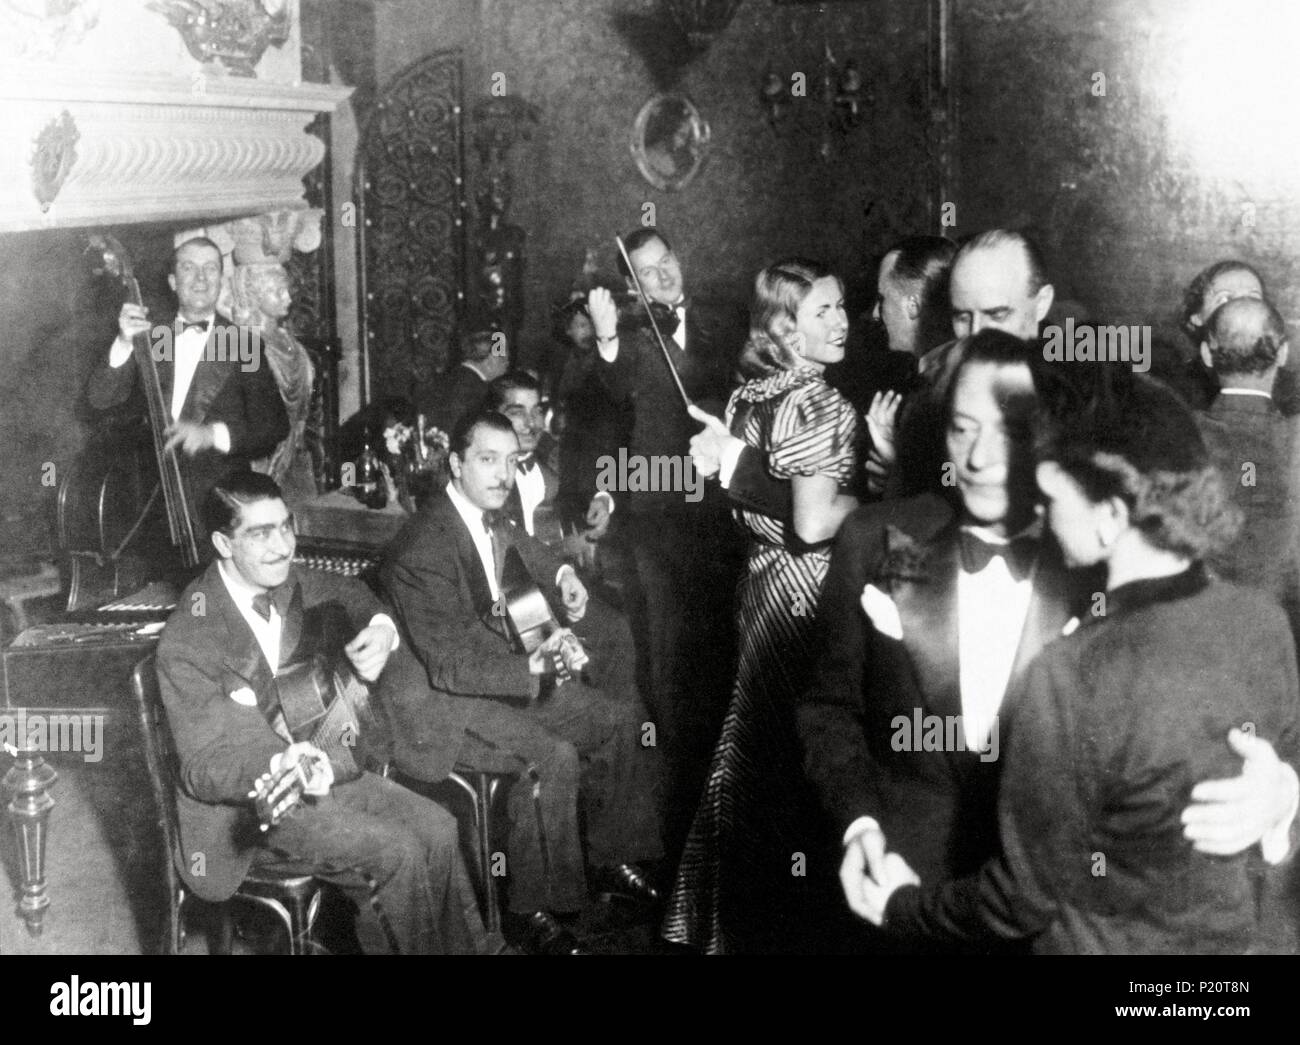 Stéphane Grappelli (1908-1997) le violoniste de jazz français de bal dans les années 30. L-R, Grappelli, Vés, D. Reinhardt, J.Reinhardt, Louis Vola. Quintet Hot Club de France, Casanova, Paris, 1937 du Club. Banque D'Images